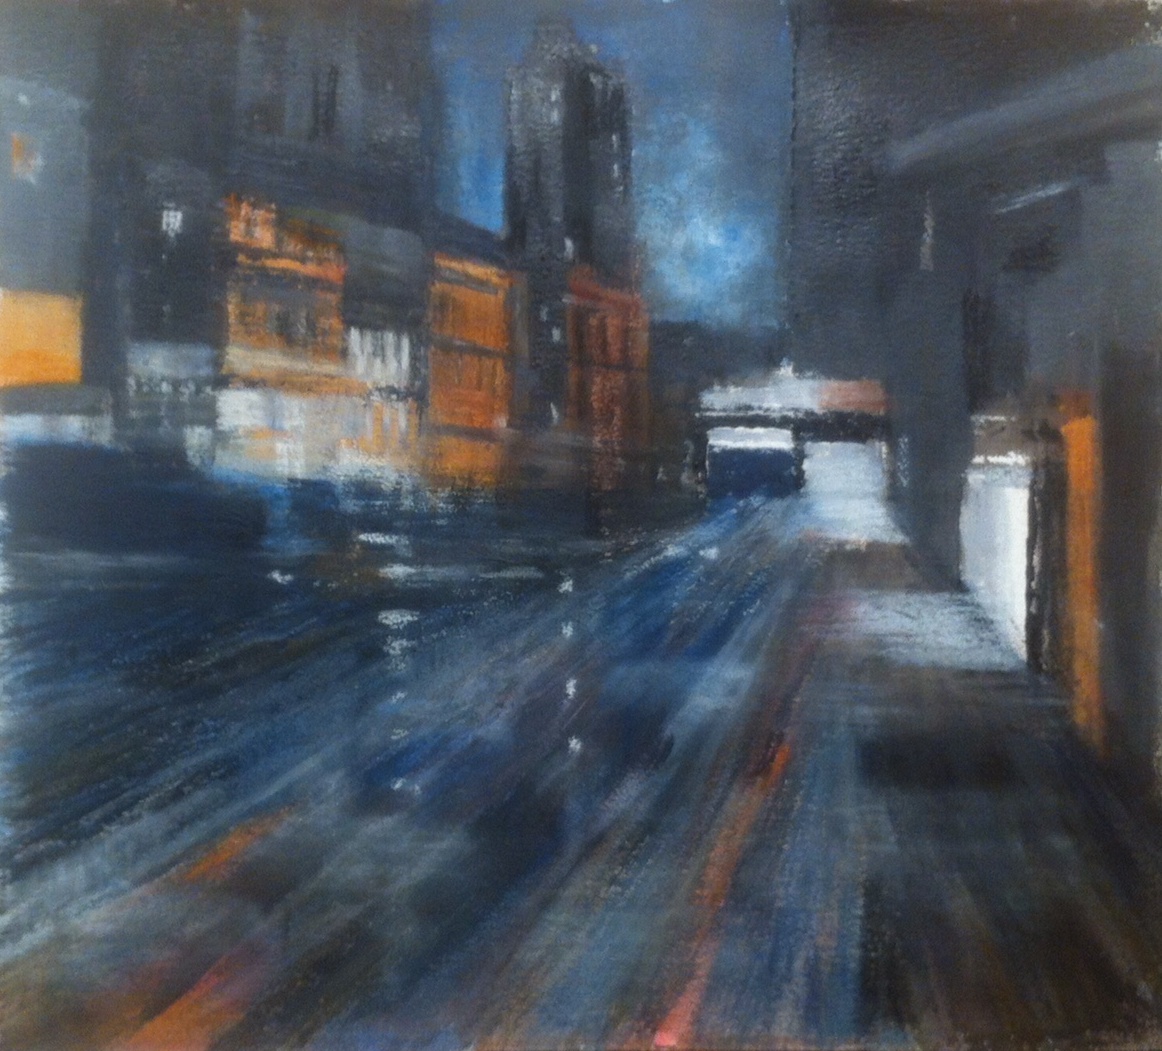 N°1762 - Town - Acrylique et pastel sur papier - 56 x 60 cm - 24 janvier 2015